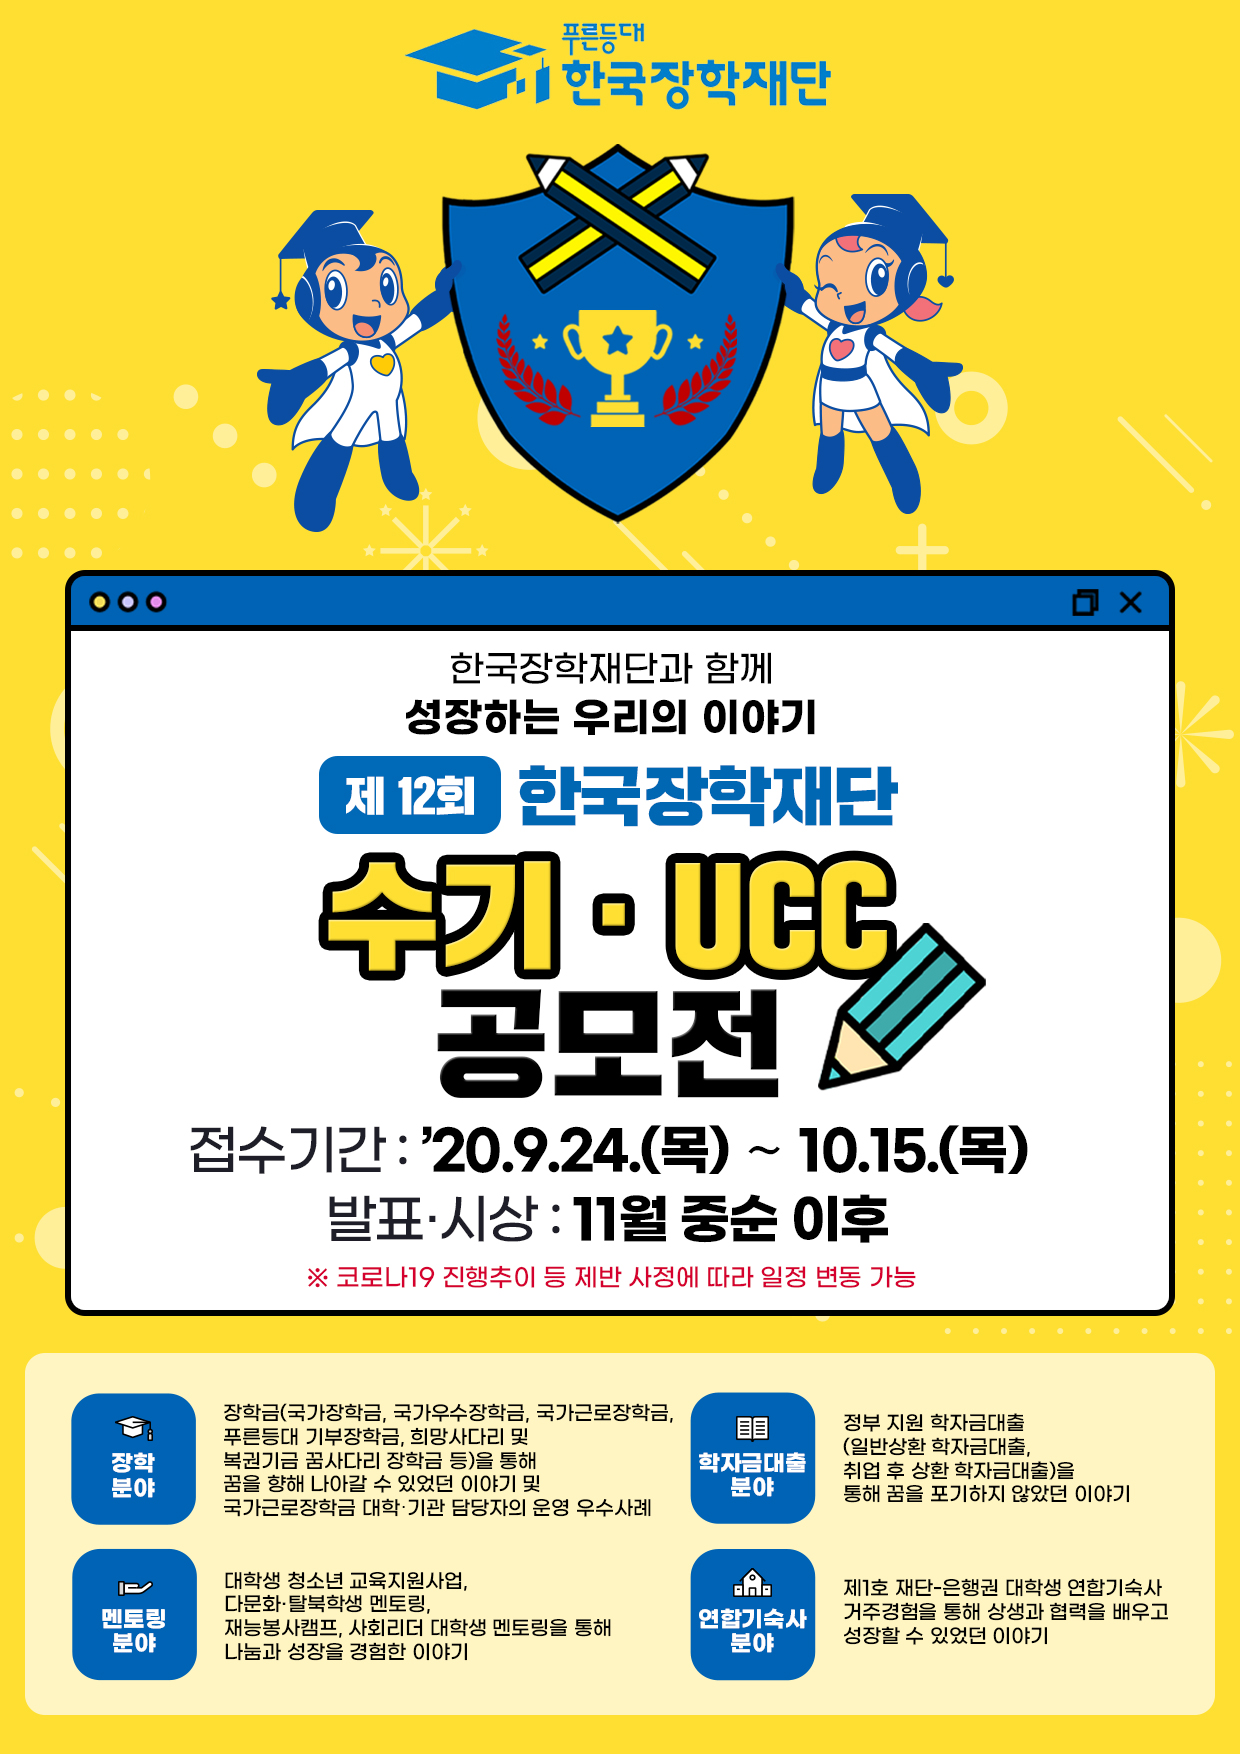 [공모전] 제12회 한국장학재단 수기·UCC 공모전 안내